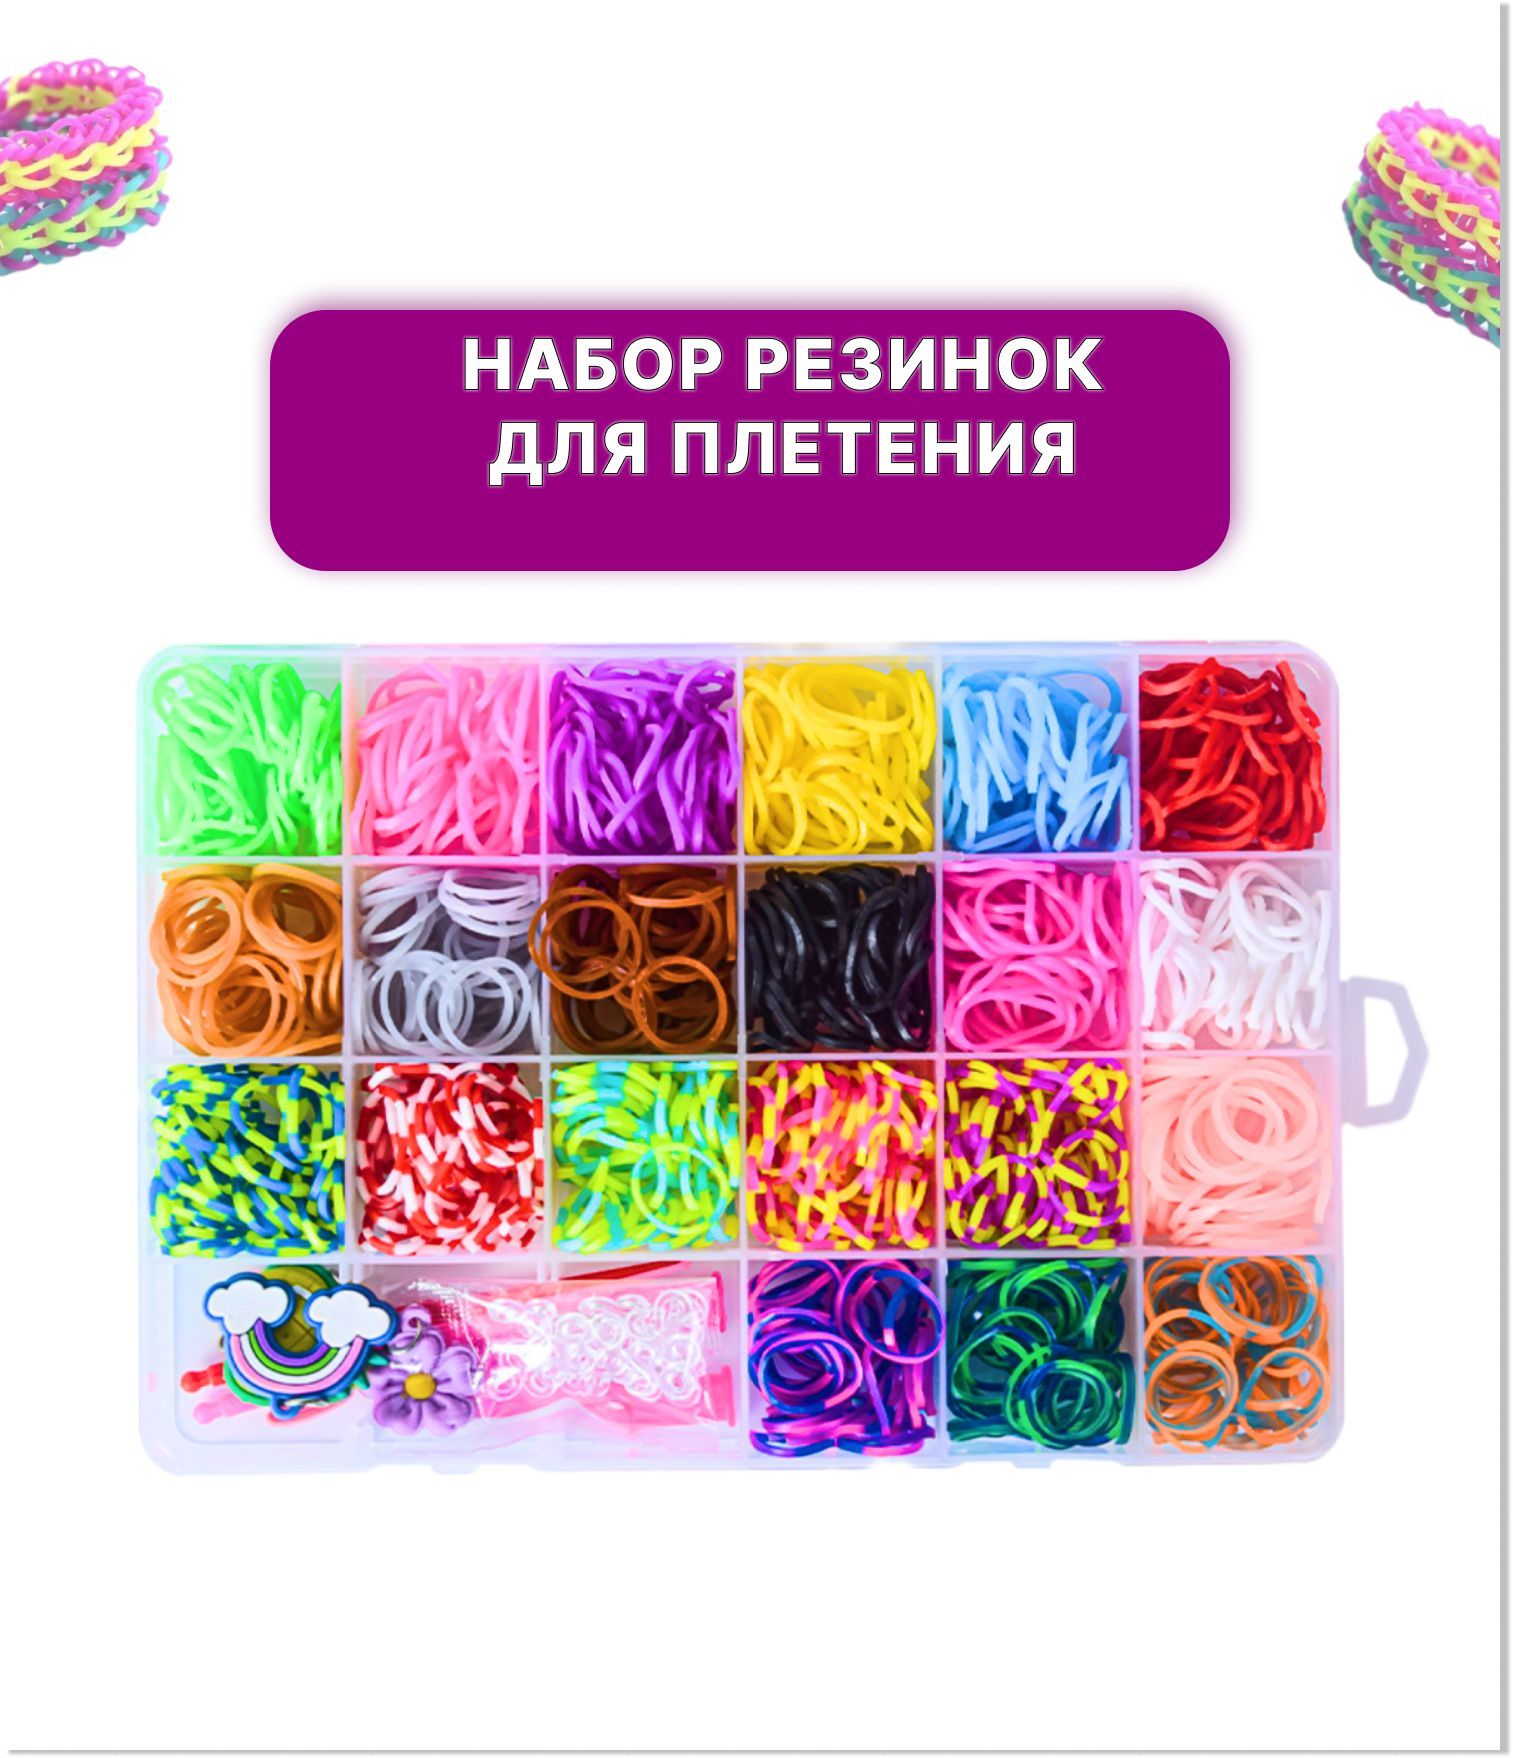 Огромный набор для плетения браслетов дружбы - paraskevat.ru Идеи для подарков